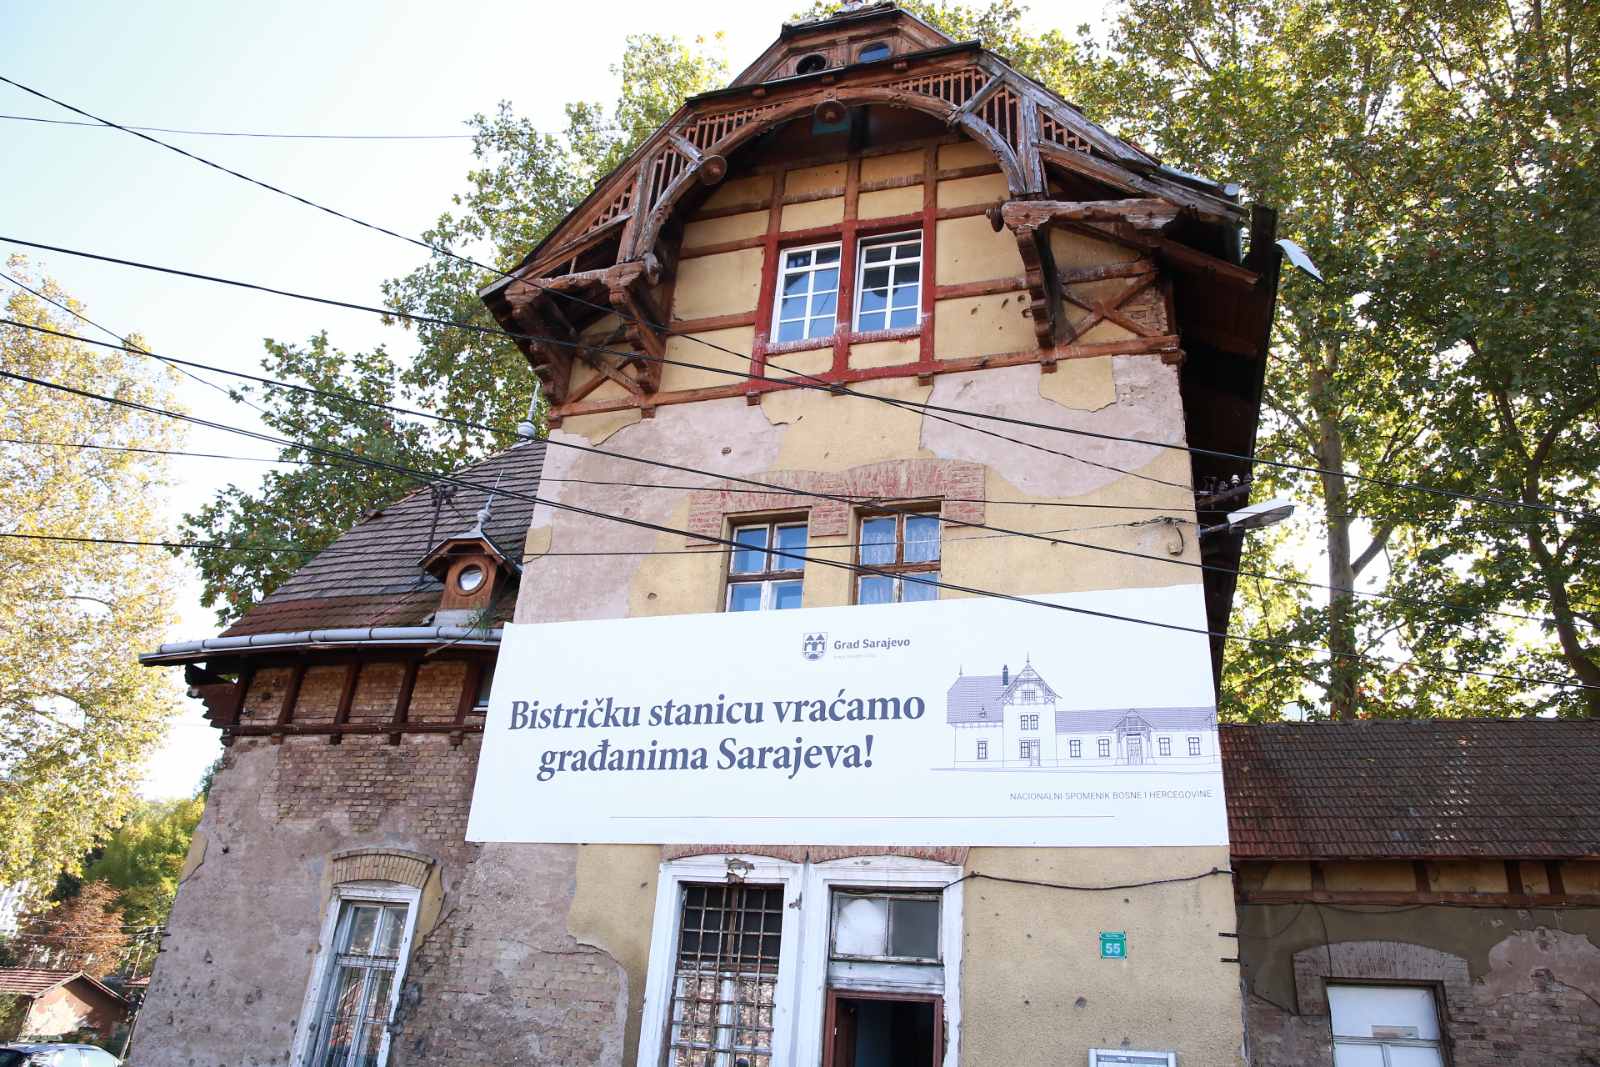  Grad Sarajevo vraća Bistričku stanicu građanima našeg glavnog grada